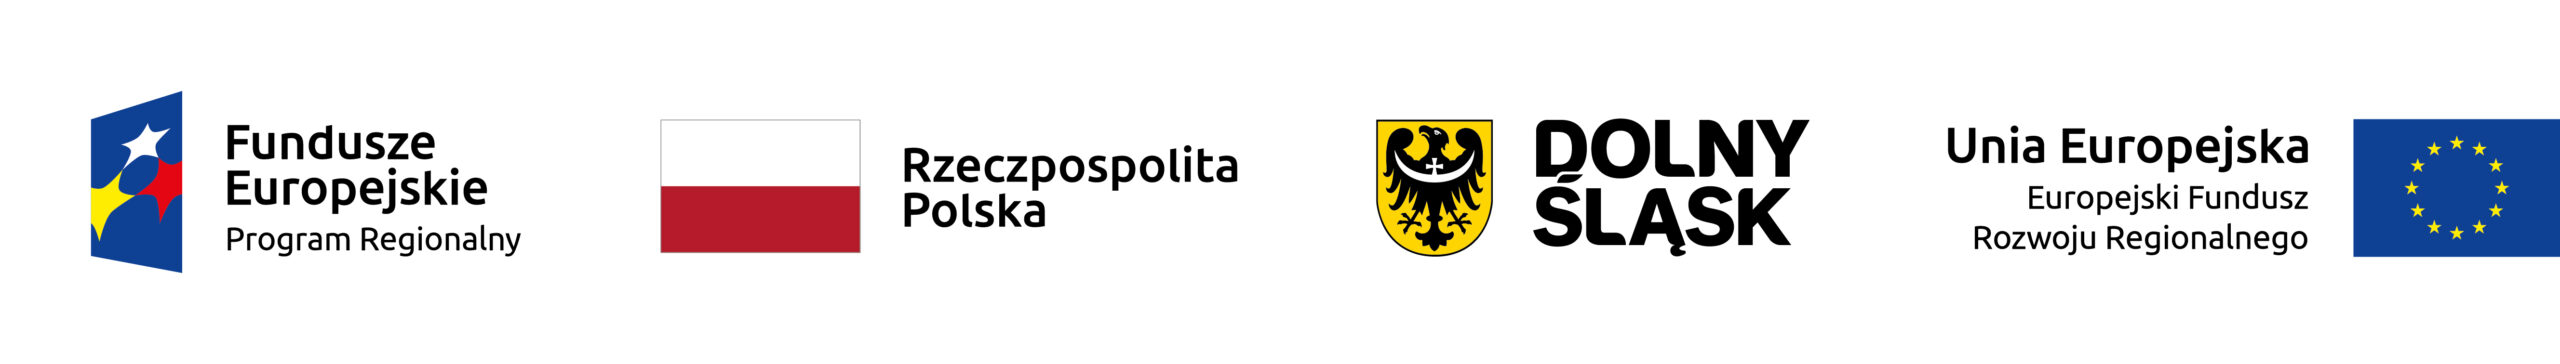 Logotypy UE, Dolnego Śląska, RP oraz Europejskiego Funduszu Rozwoju Regionalnego